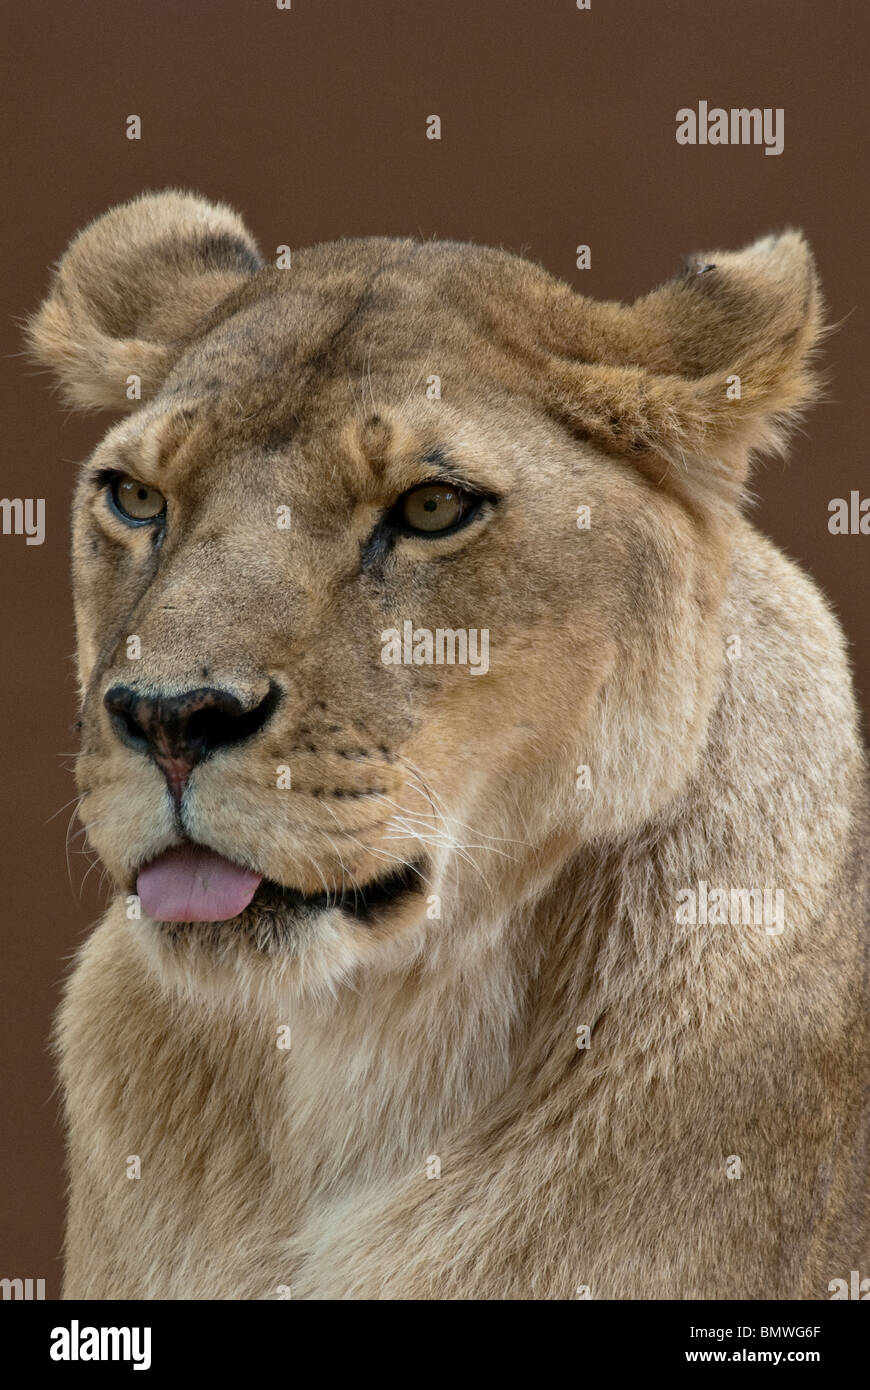 African Lion Panthera leo Rio Grande Zoo Albuquerque New Mexico USA Stock Photo